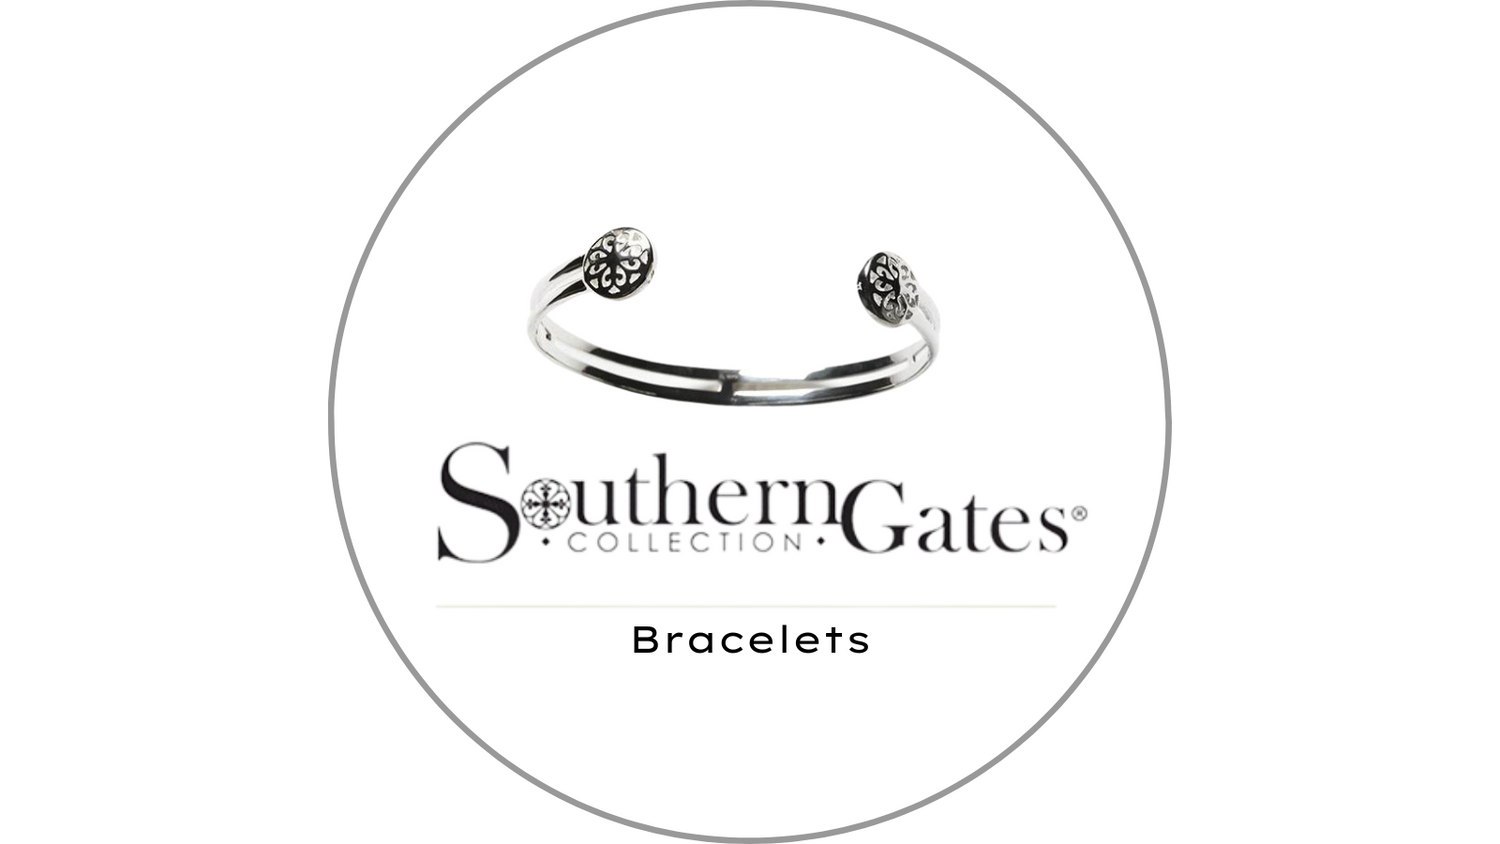 Southern Gates Bracelets